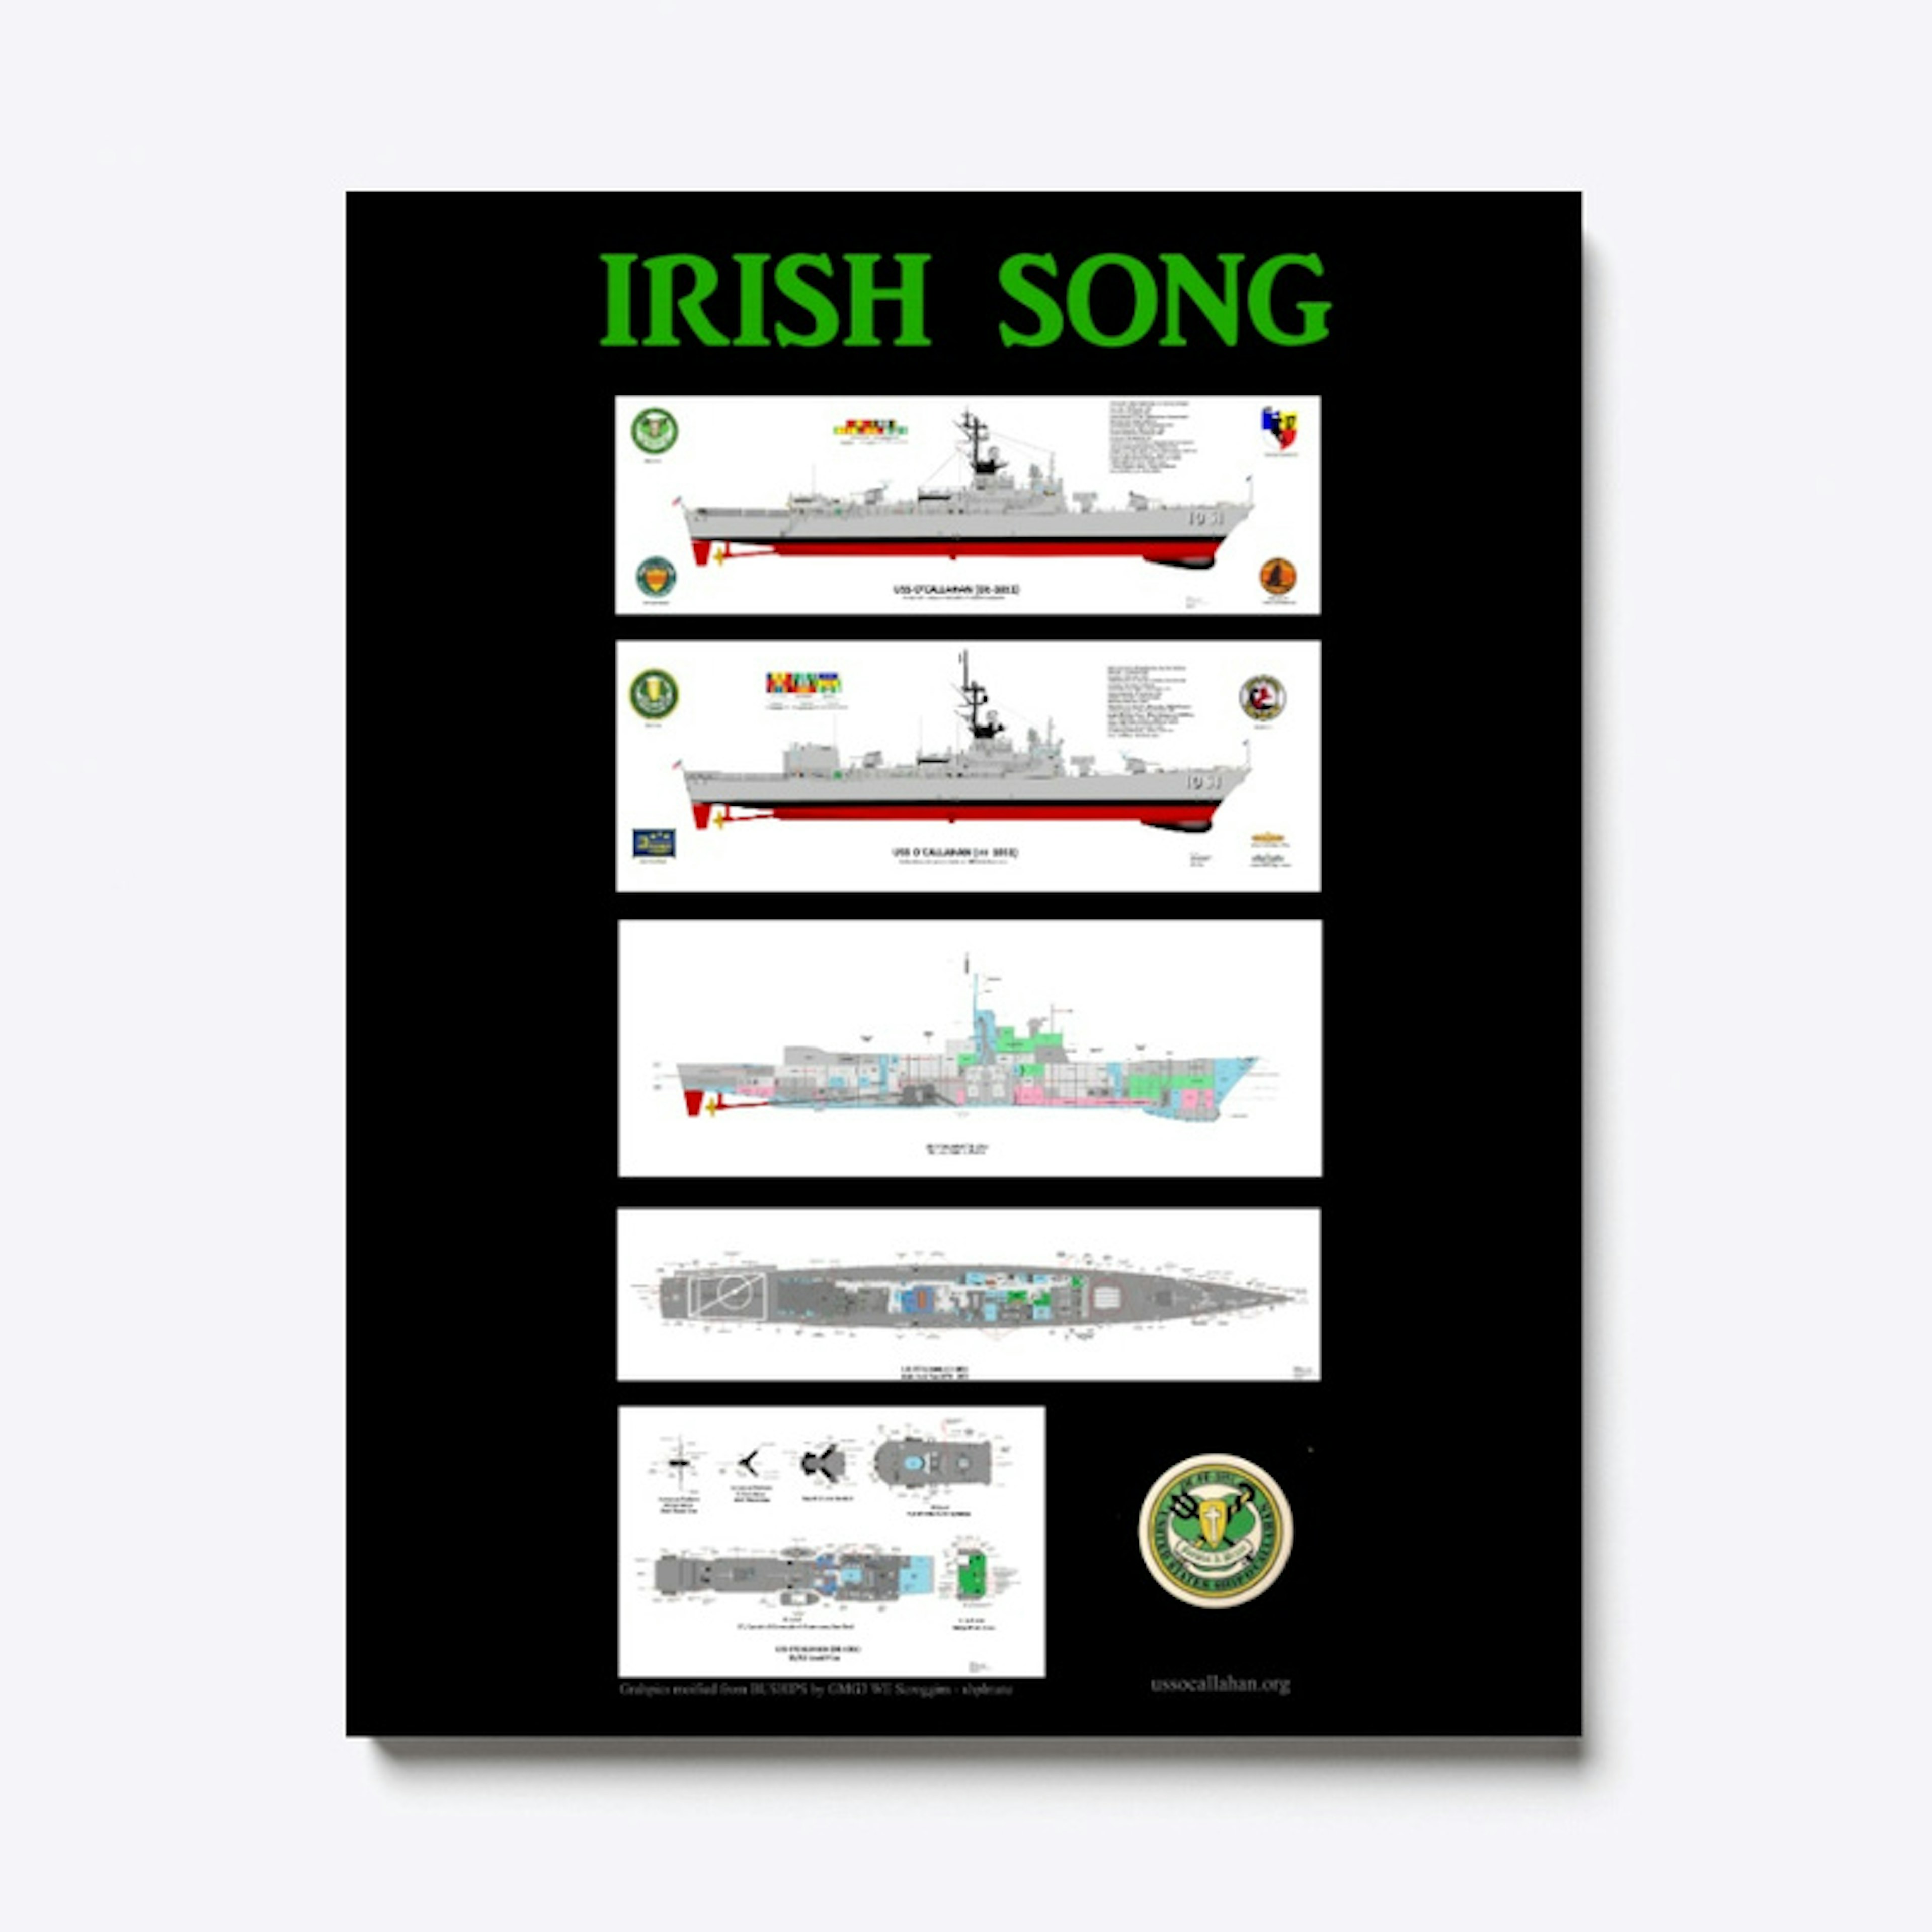 IRISH SONG - 5 ways